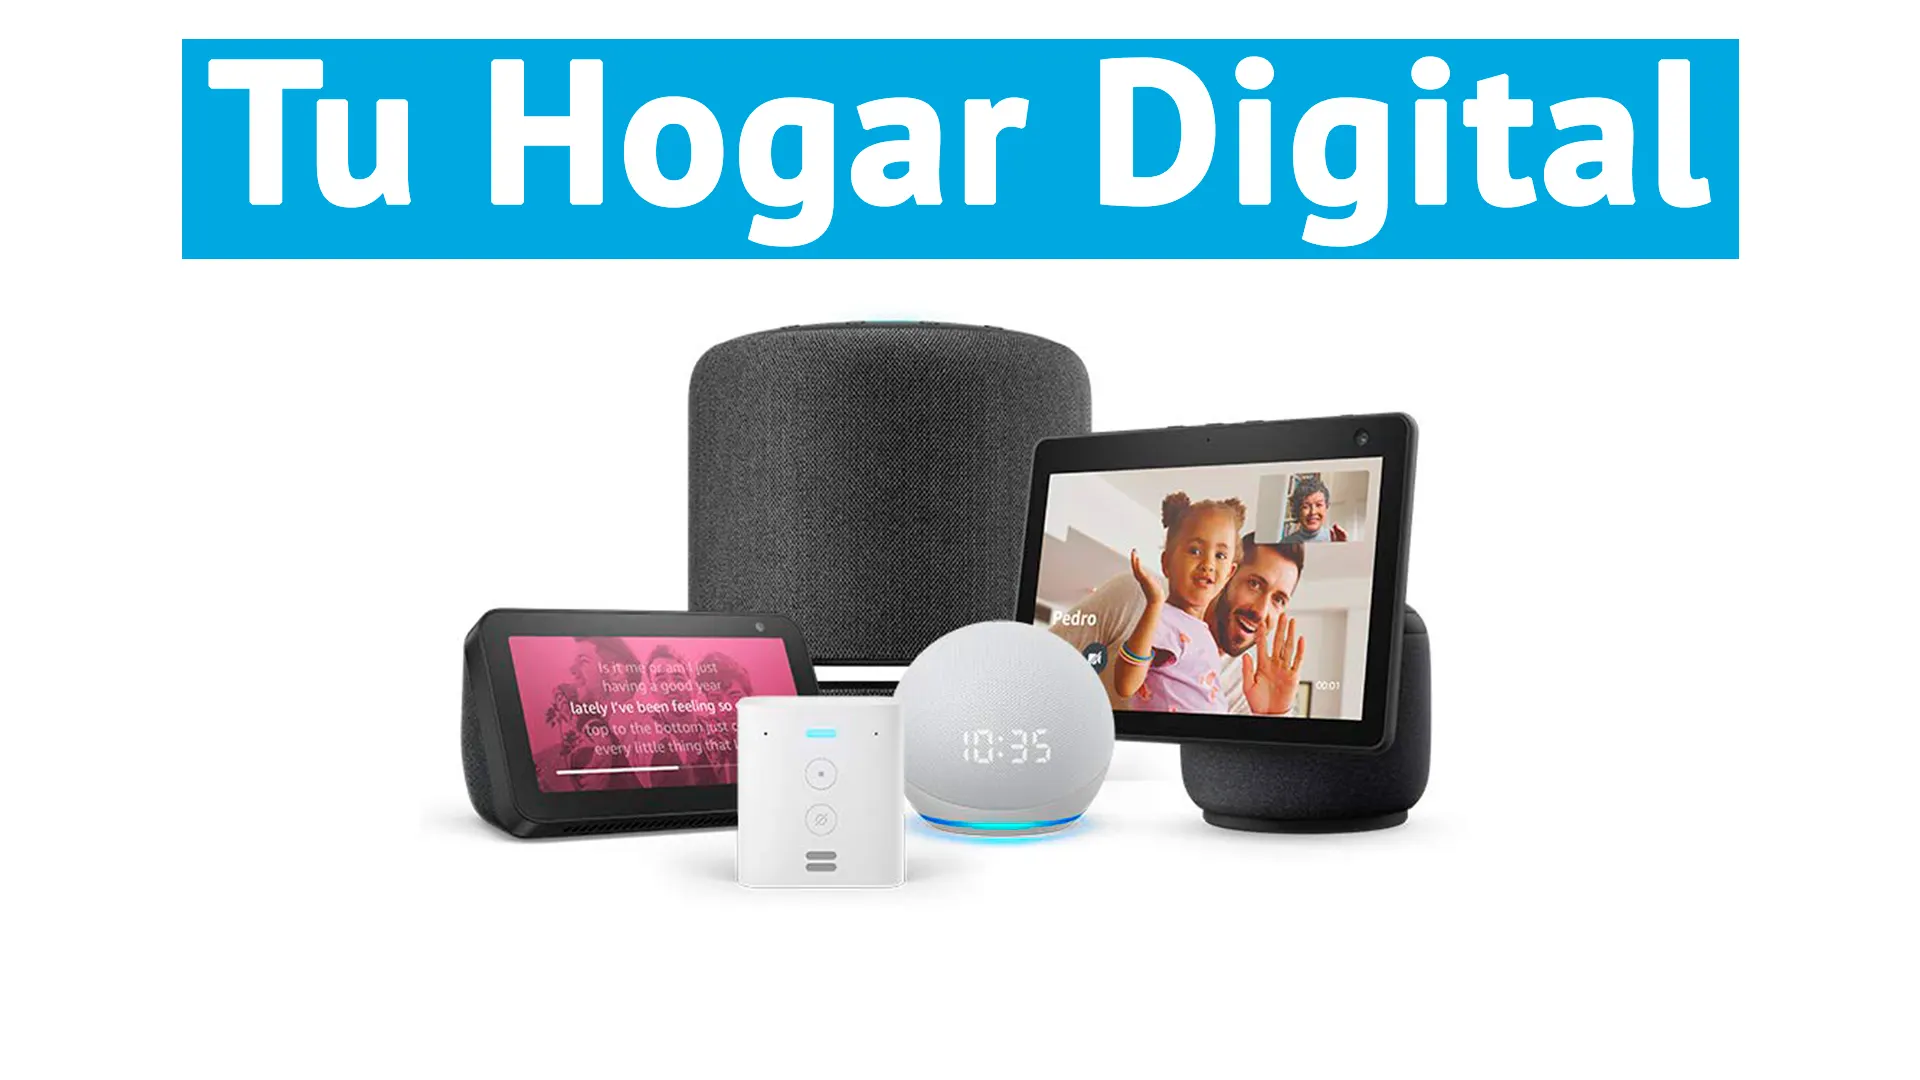 Tu hogar digital a lo grande con las ofertas de dispositivos inteligentes con Alexa integrada